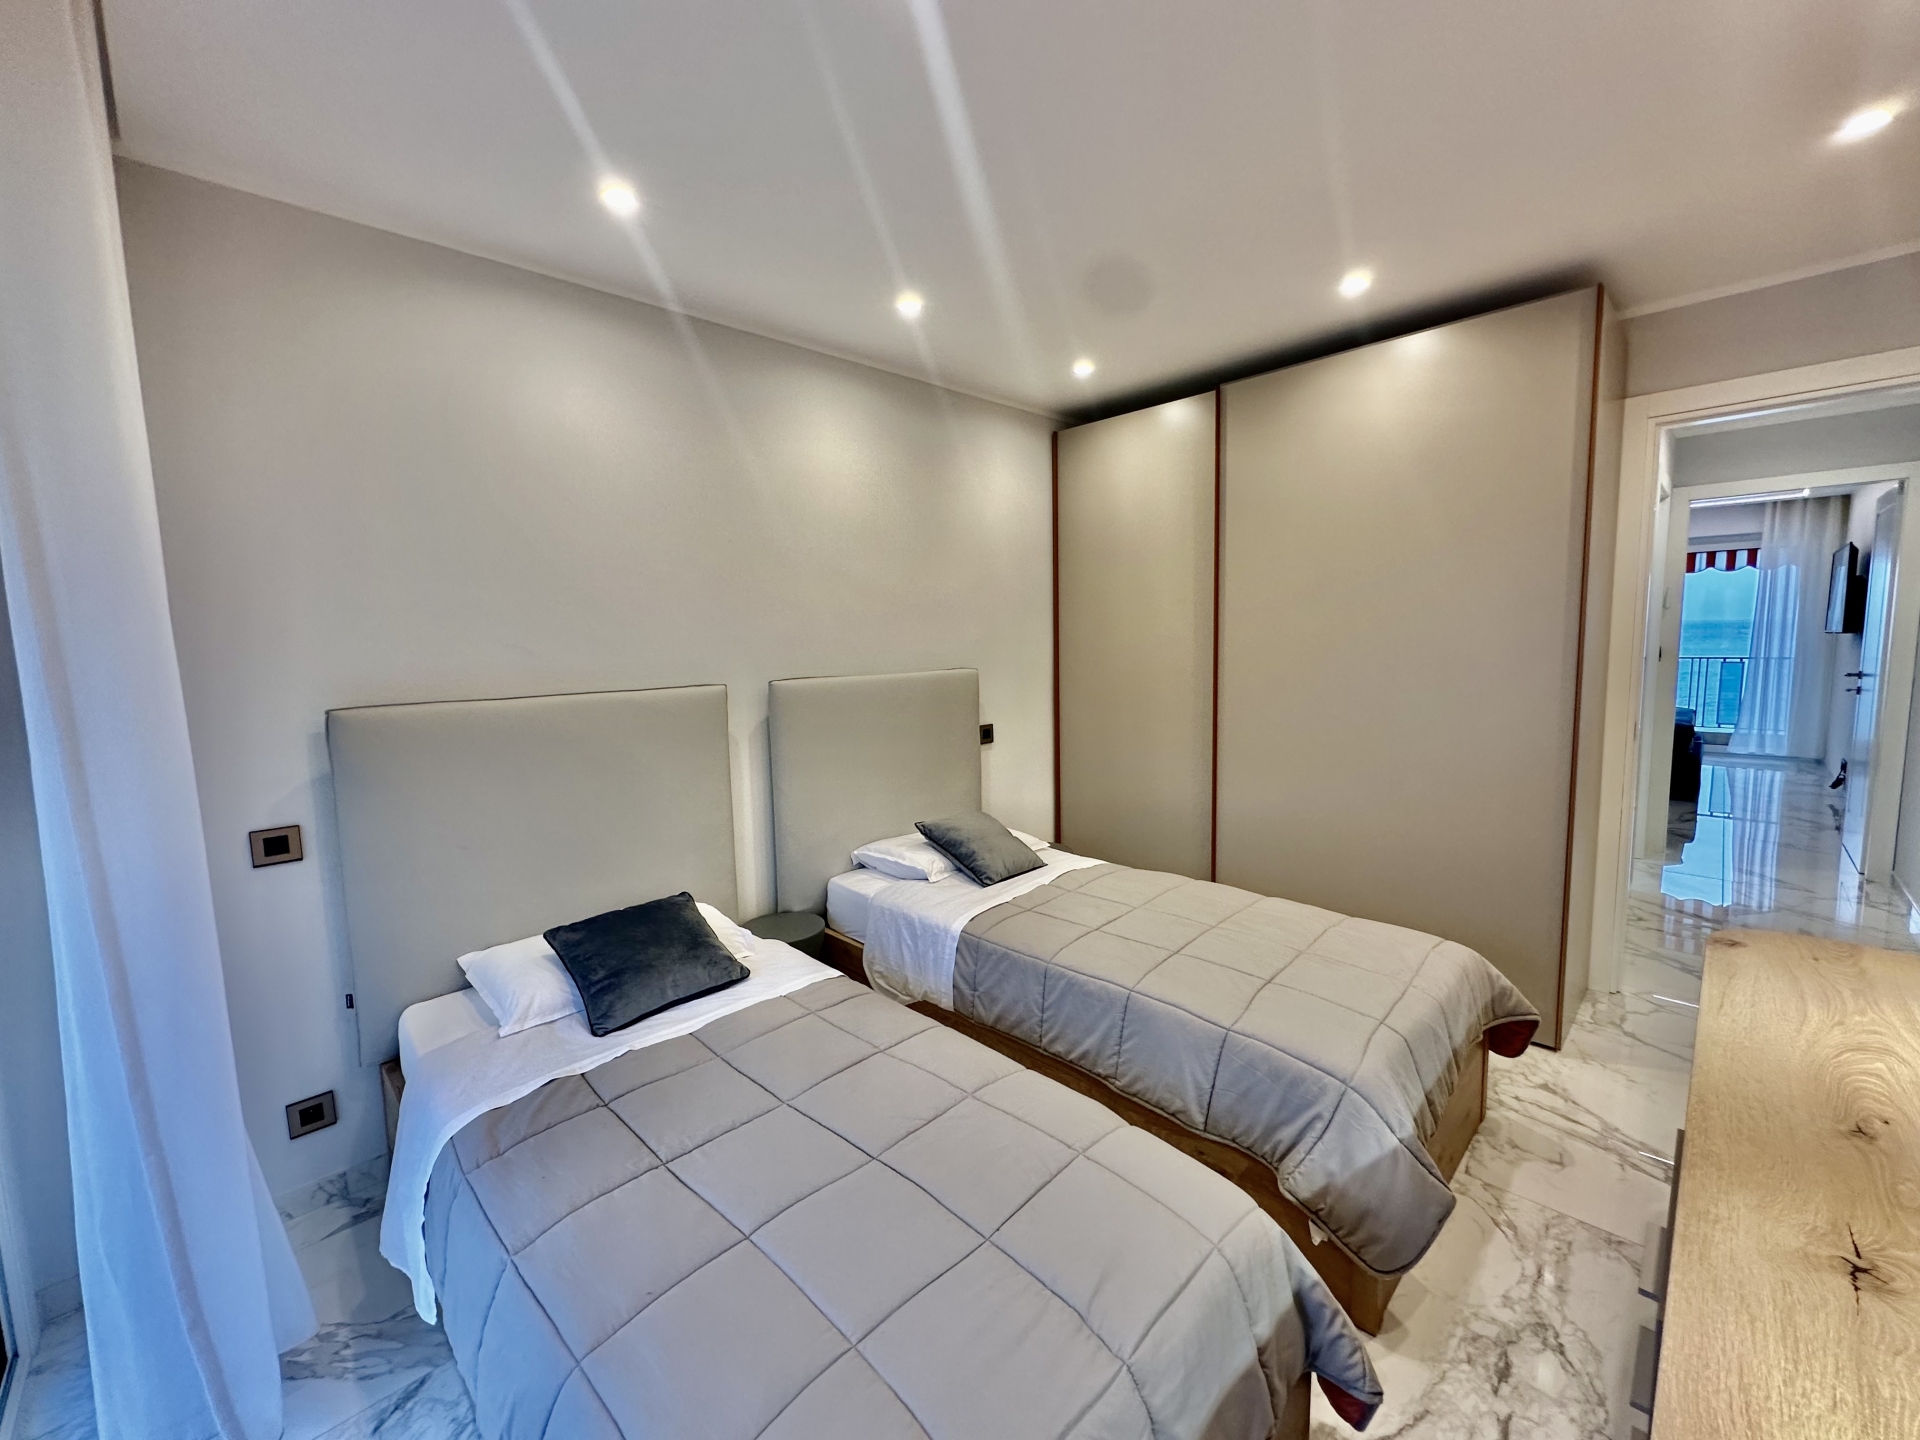 Dotta 3 rooms apartment for sale - ALOES ET BOUGAINVILLIERS - Roquebrune-Cap-Martin - Roquebrune-Cap-Martin - imgimage00001